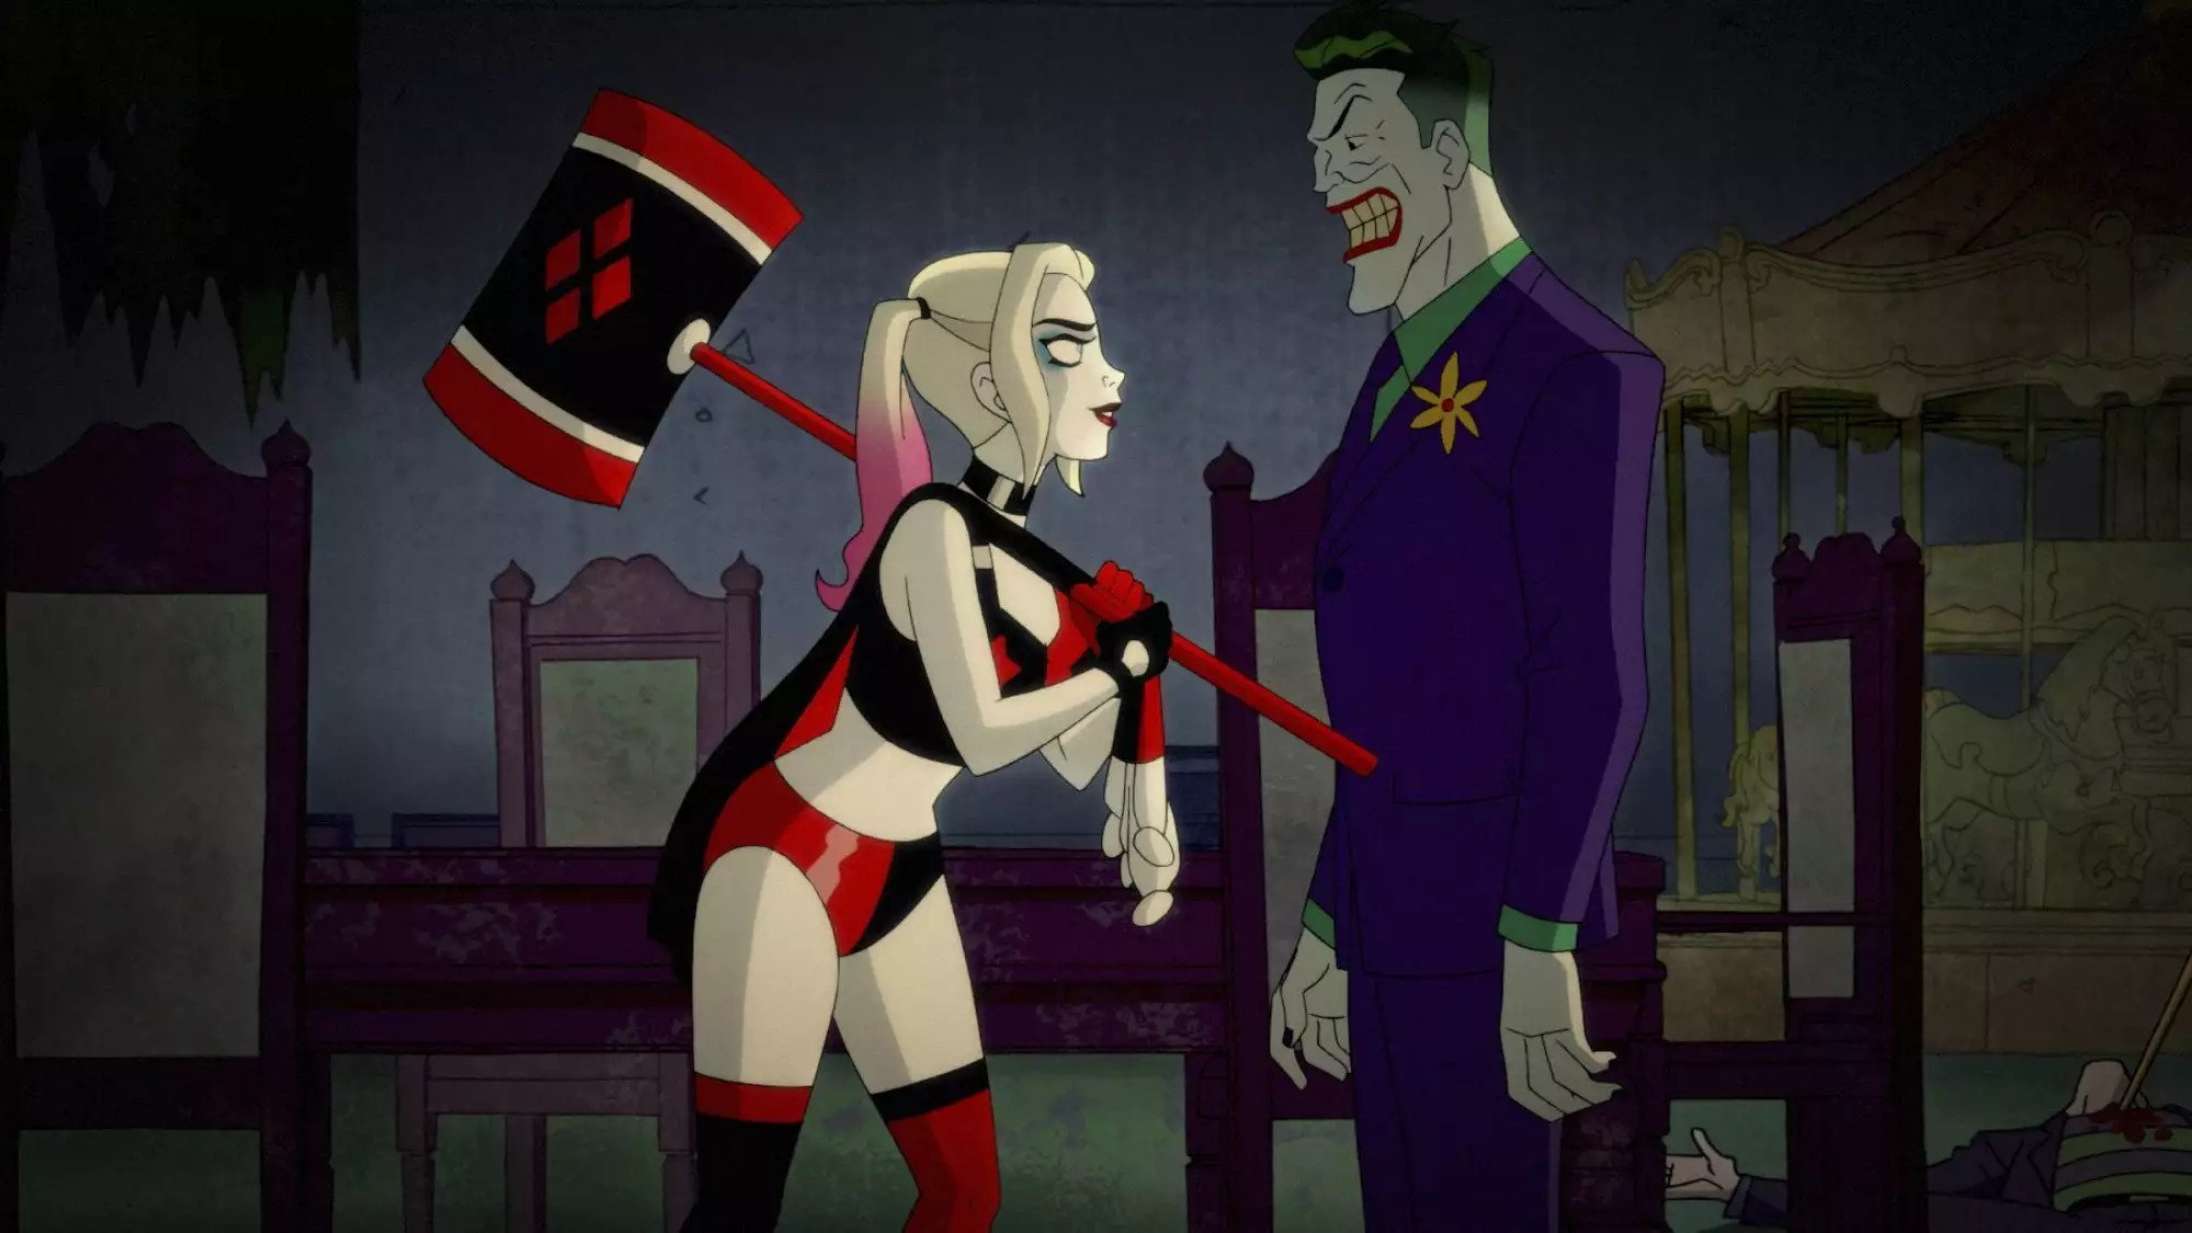 Den ultimative Harley Quinn skal findes i sublim og grænsesøgende serie, der nu er aktuel igen